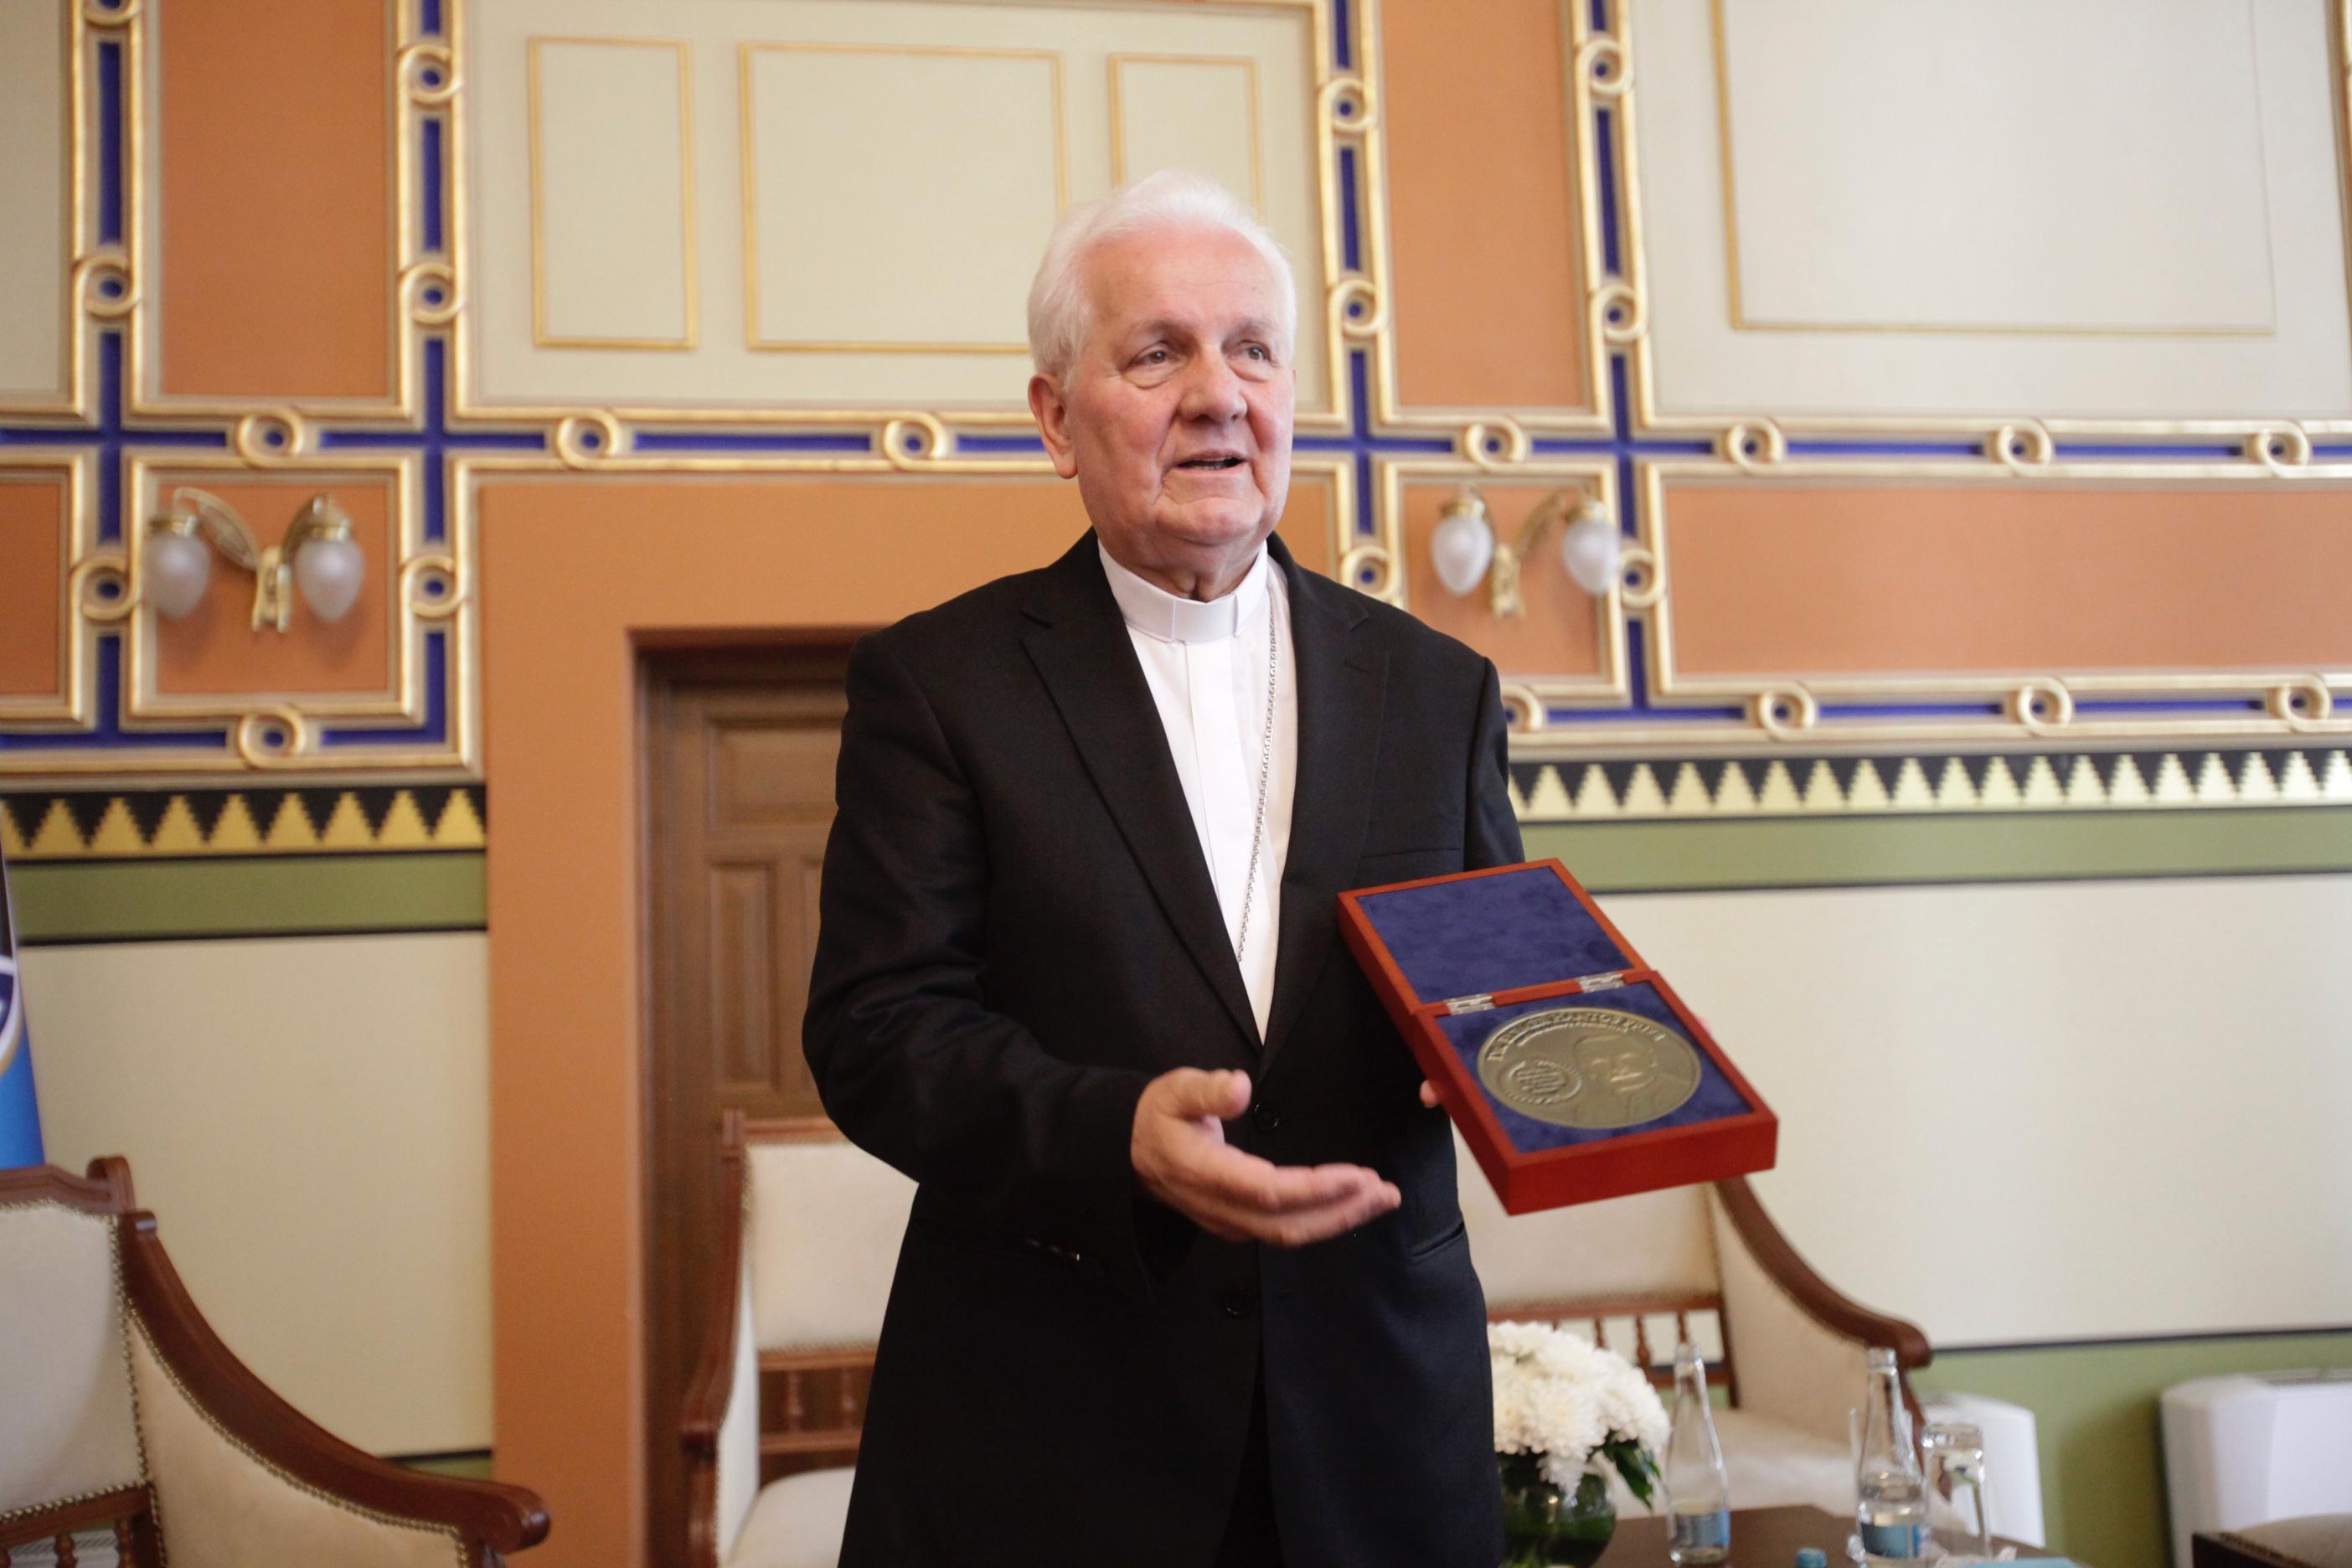 Biskupu Franji Komarici uručena nagrada "Dr. Elemer Hantos"